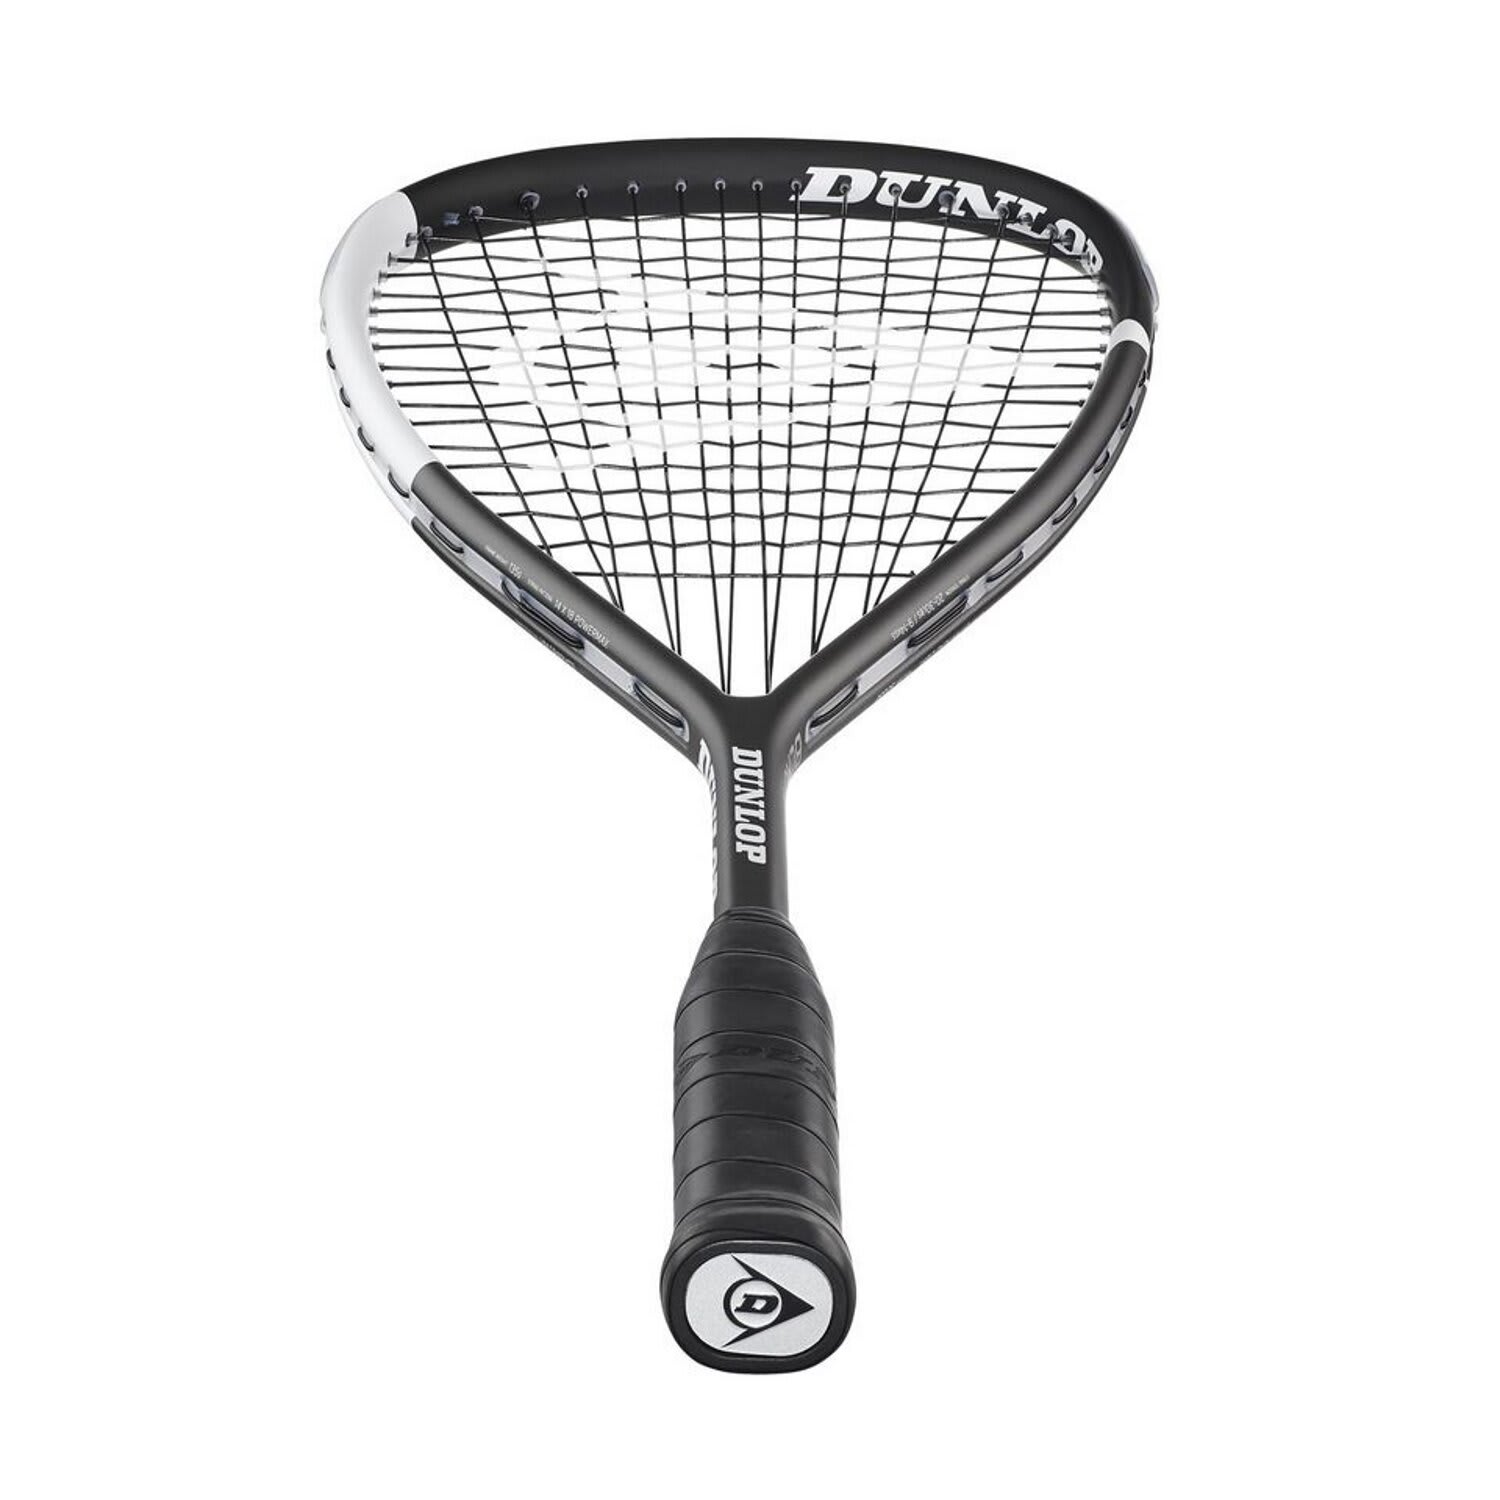 Dunlop Blackstorm 4D Titanium Squash Racket | Sportsmans Warehouse